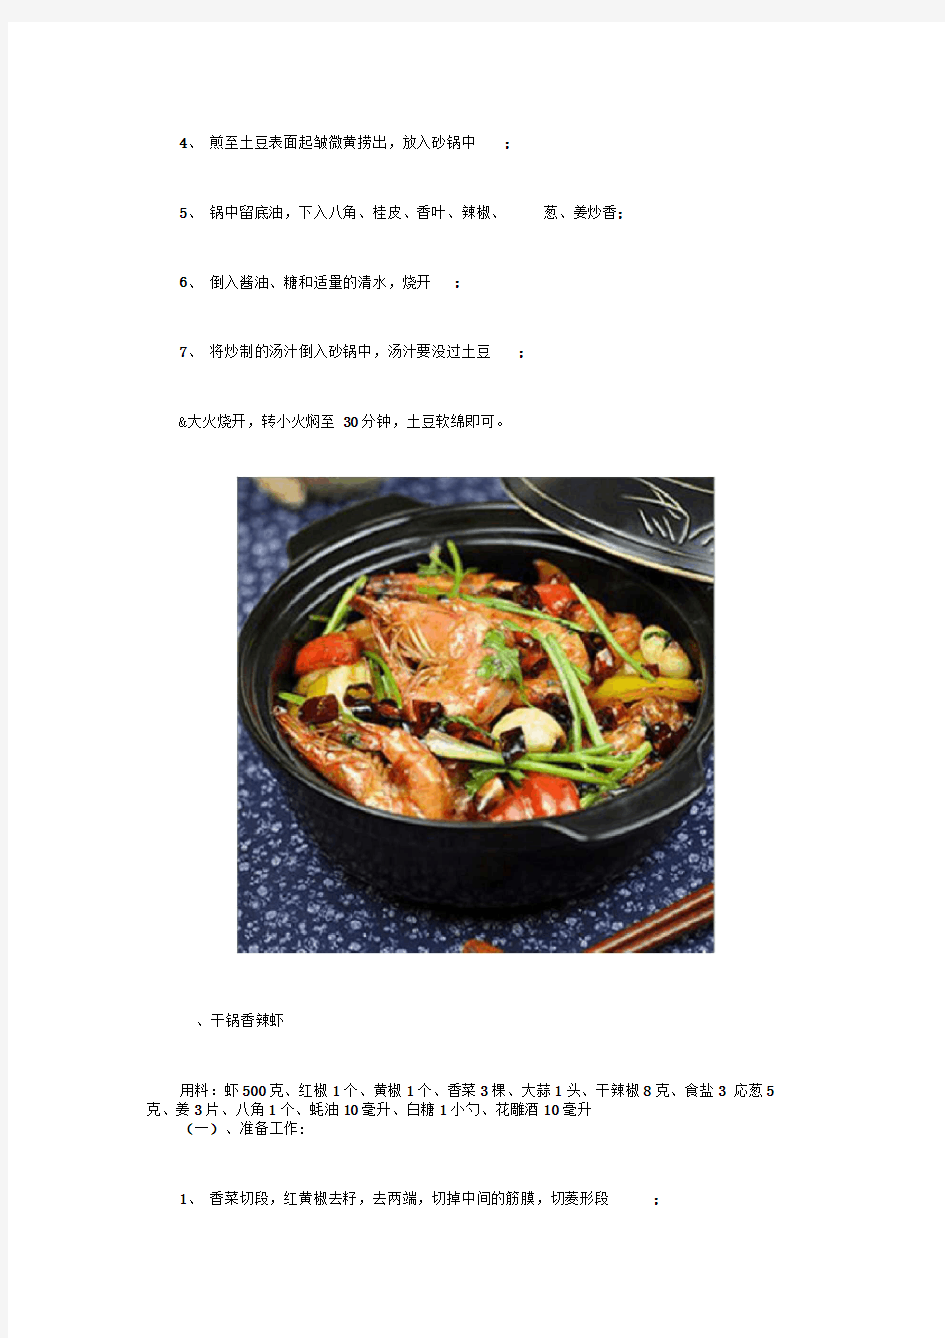 10道家常砂锅菜谱做法暖暖的好好吃